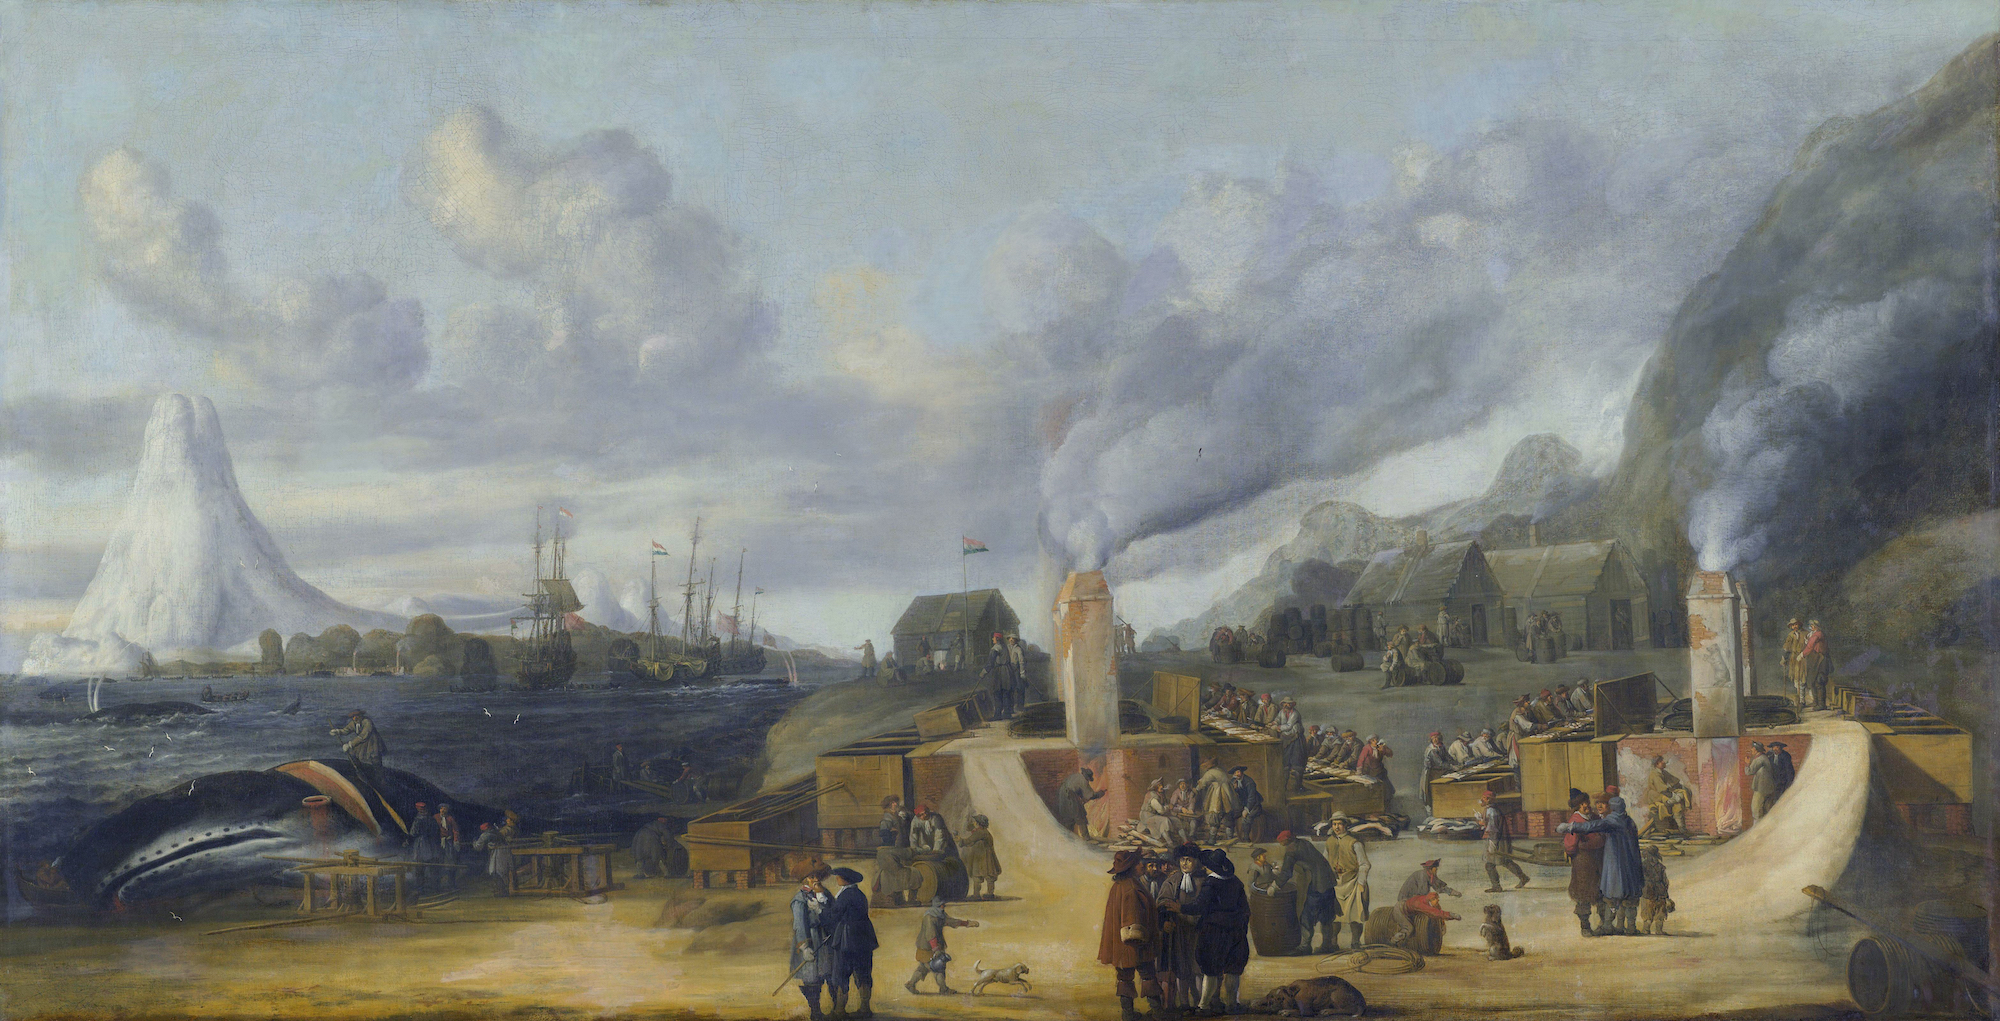 Die Walölfabrik der Amsterdamer Kammer der Noordschen Compagnie in Smeerenburg by Cornelis de Man - 1639 - 108 x 205 cm Rijksmuseum